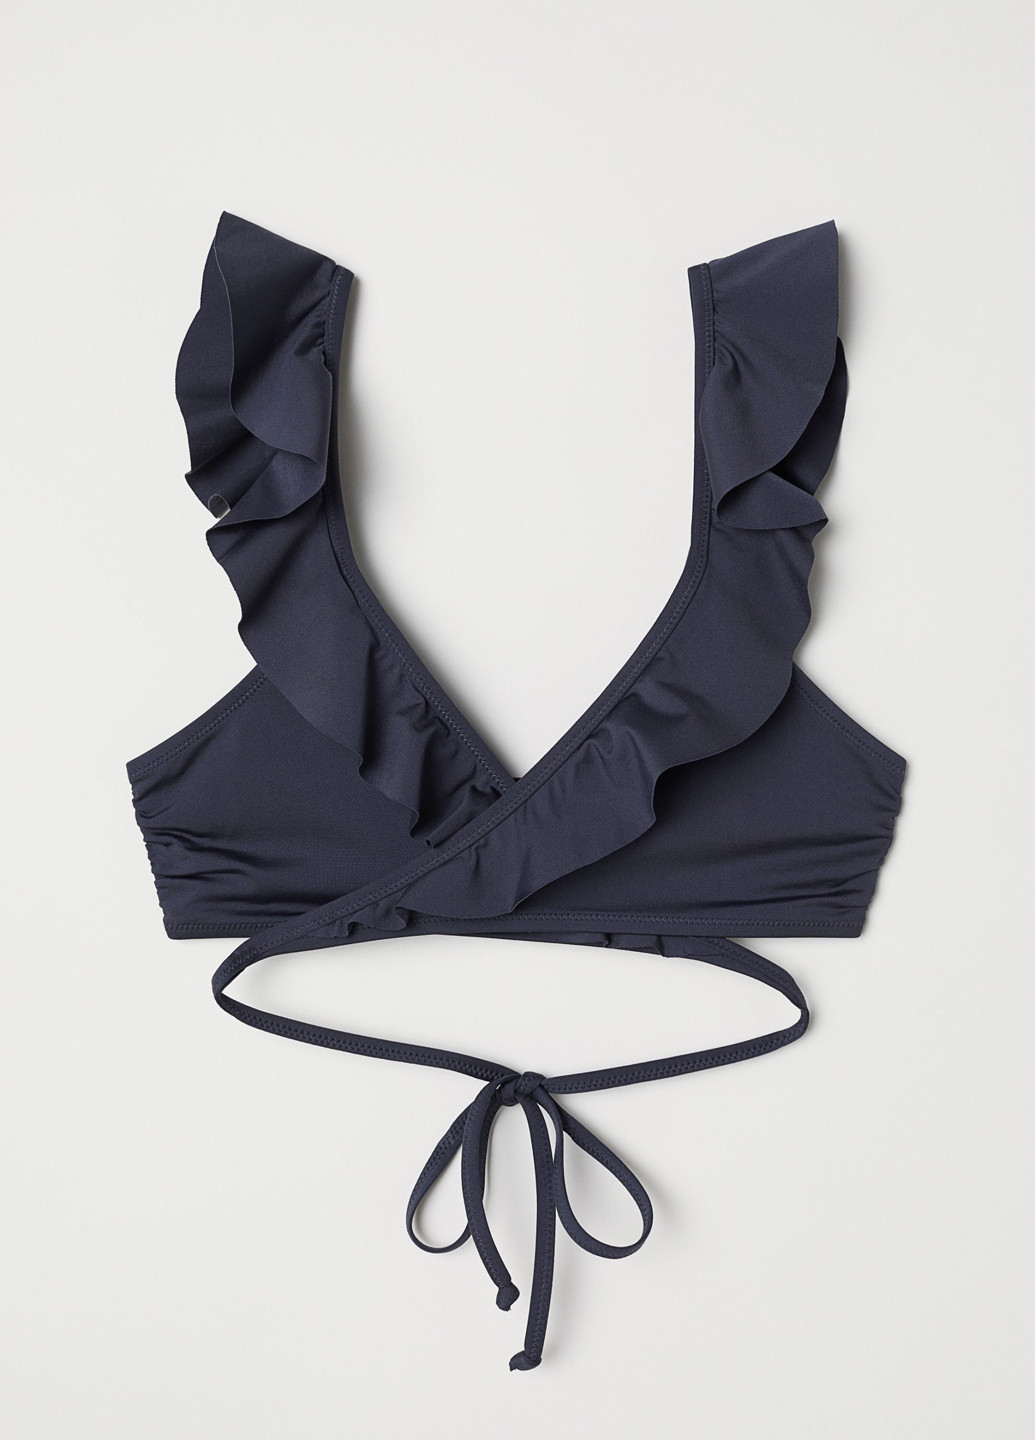 Купальный лиф H&M бикини серо-синий пляжный полиамид